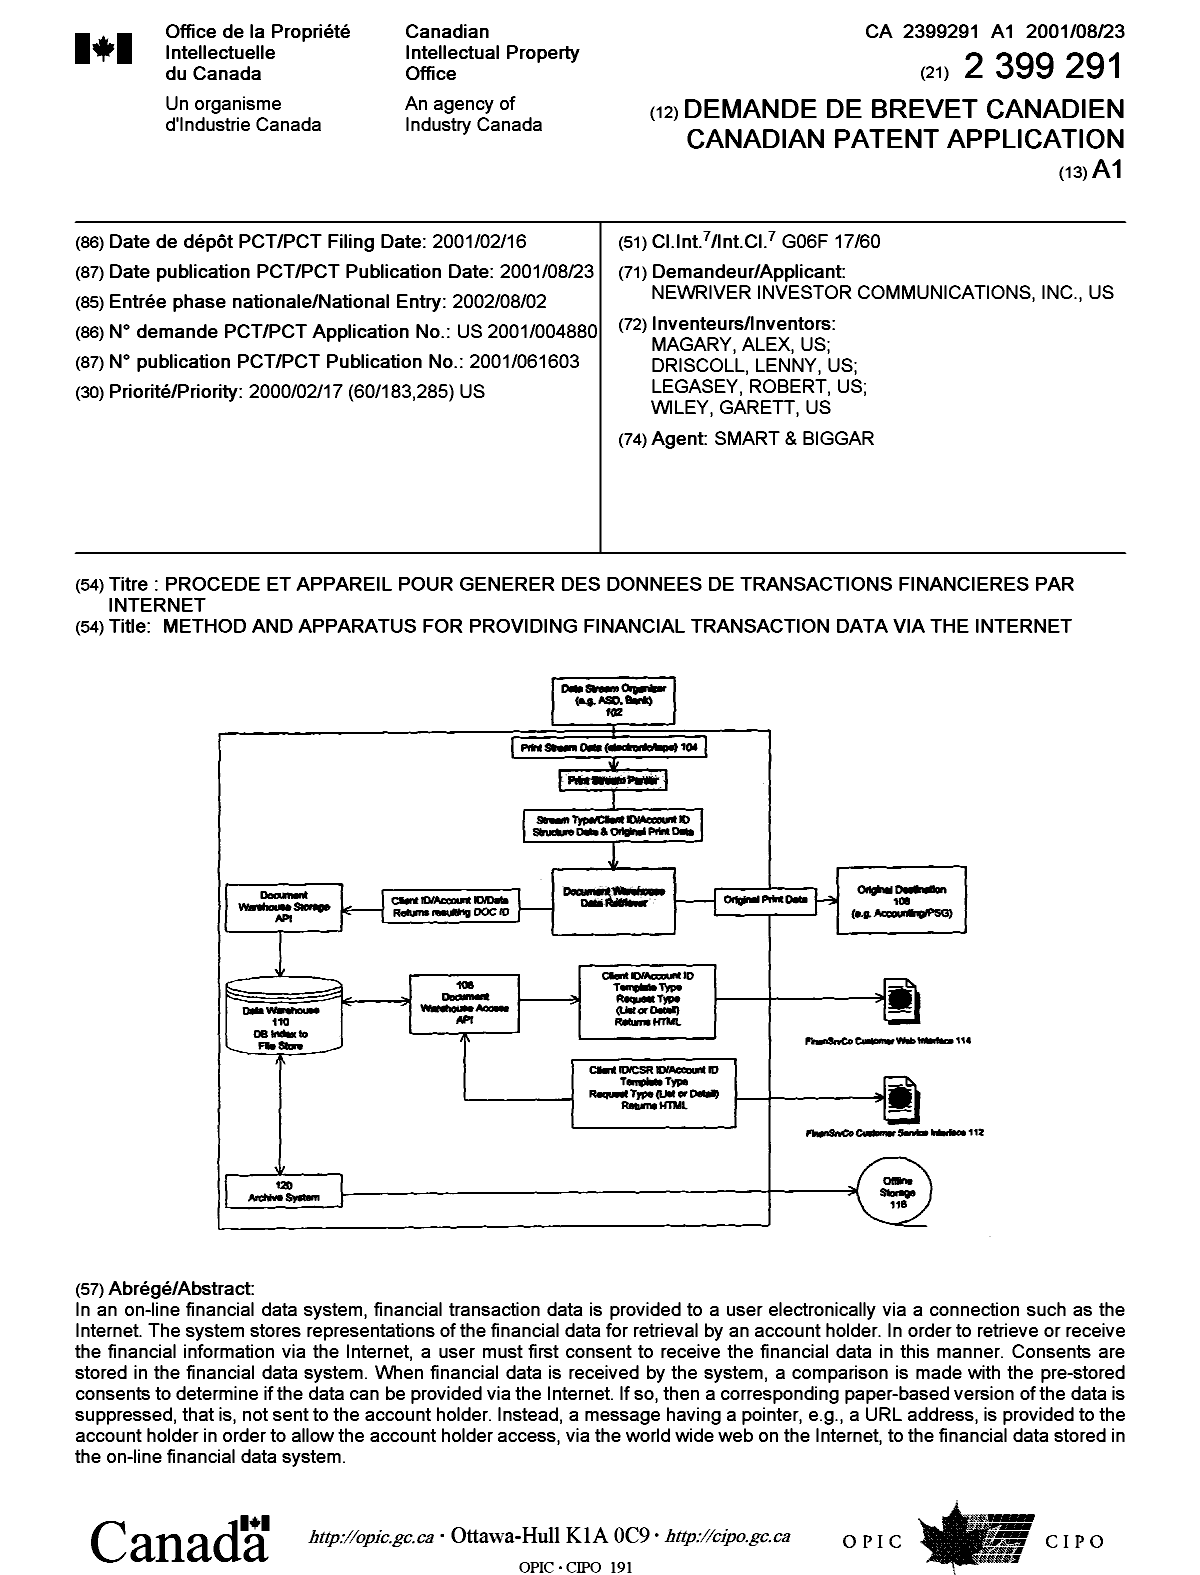 Document de brevet canadien 2399291. Page couverture 20021122. Image 1 de 1